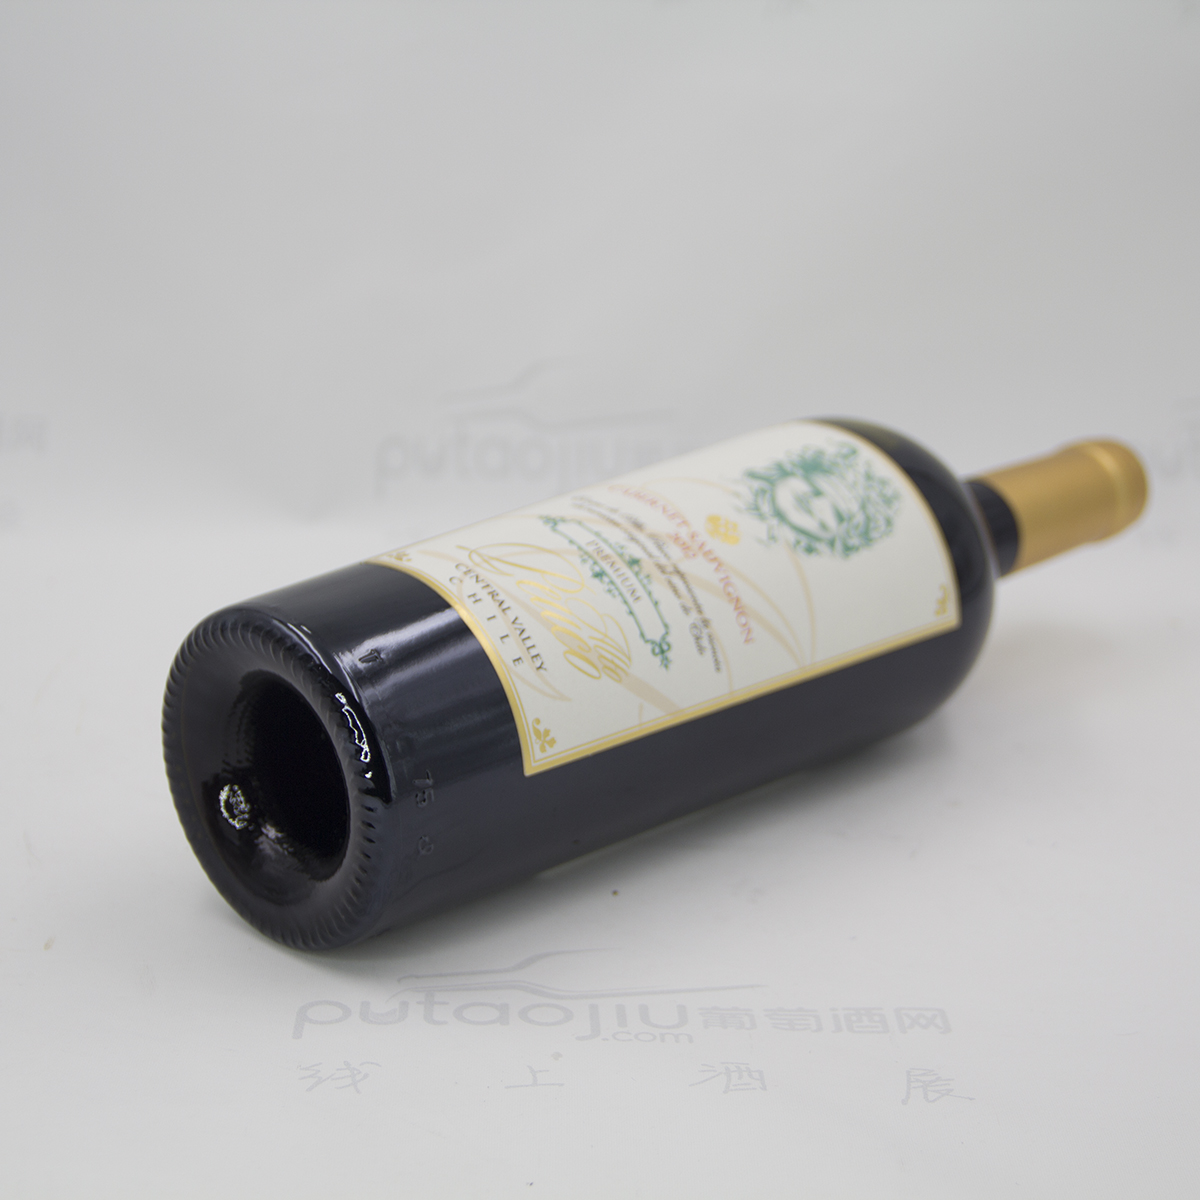 智利中央山谷艾特酒庄赤霞珠精选干红葡萄酒